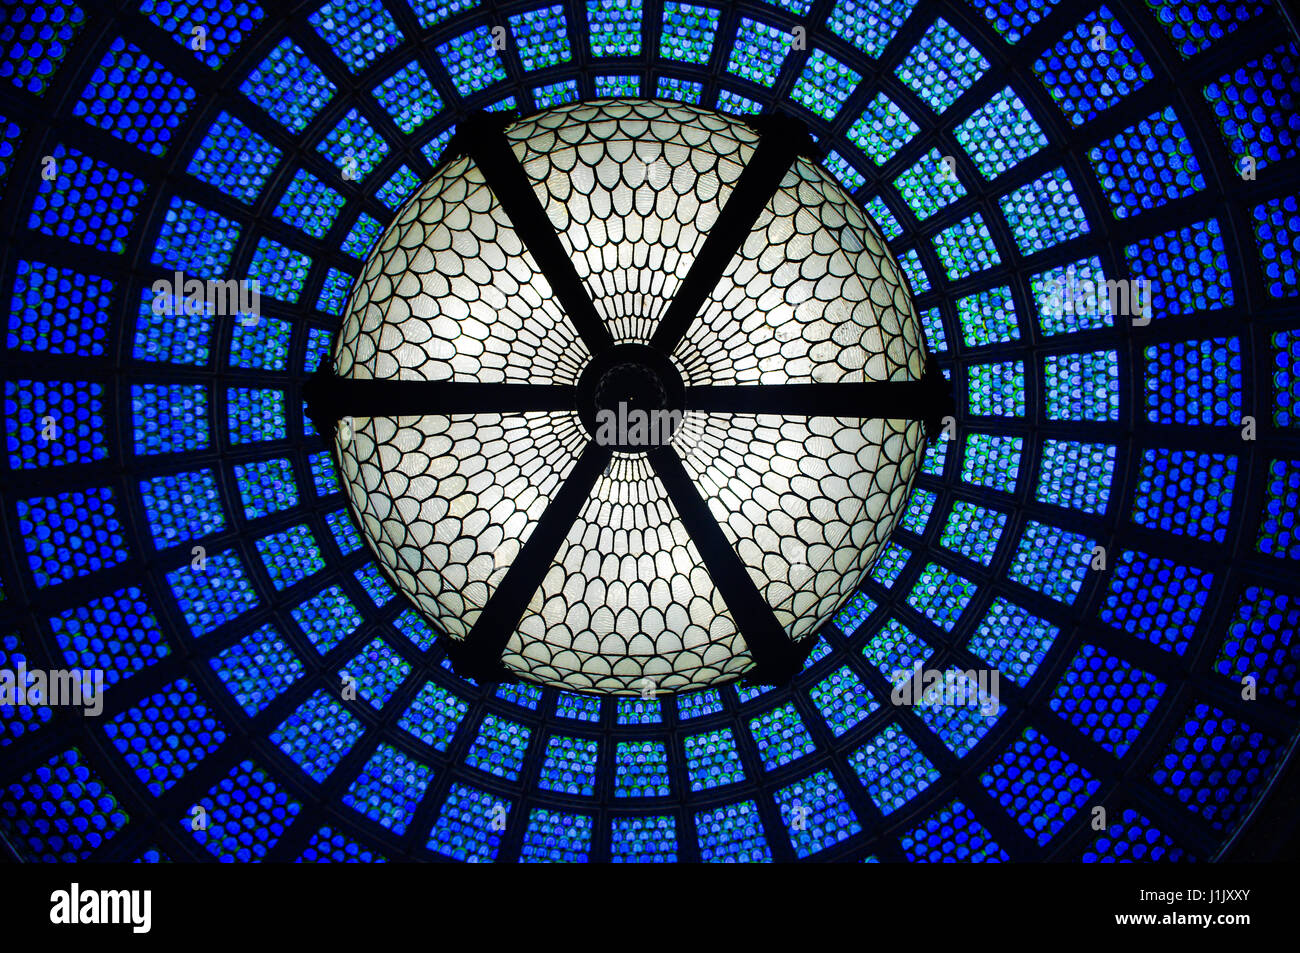 Una cúpula de cristal, techo de cristal en el centro cultural de Chicago. el intrincado techo está hecho de vidrieras azules. El modelo es circular y ornamentadas. Foto de stock